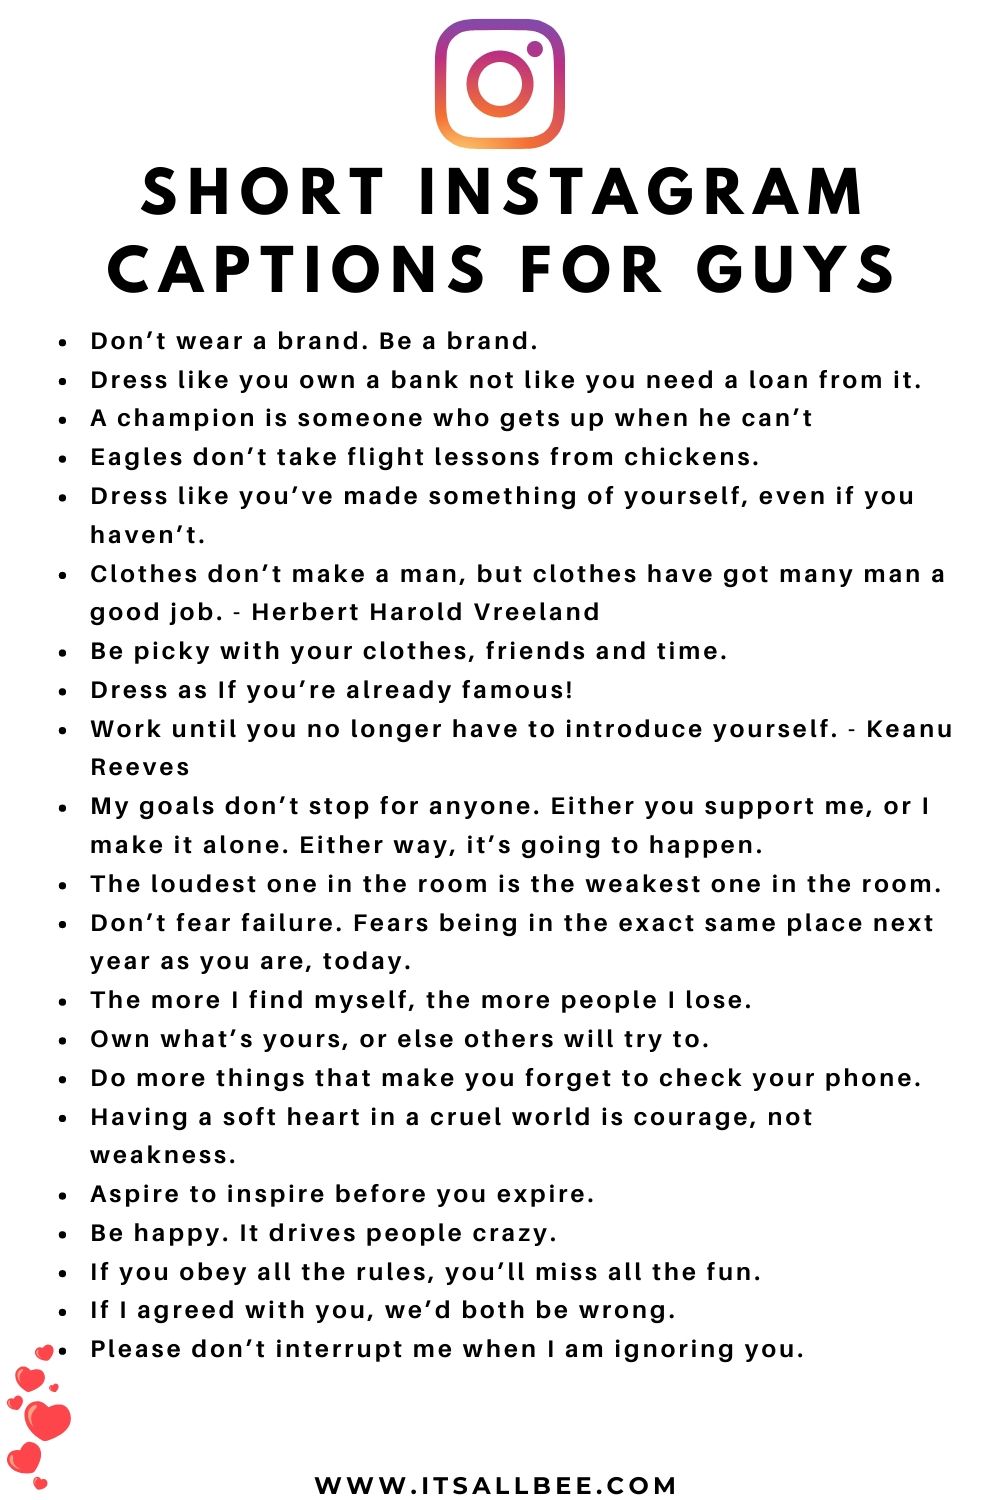 Best Instagram Captions For Guys Itsallbee Travel Blog